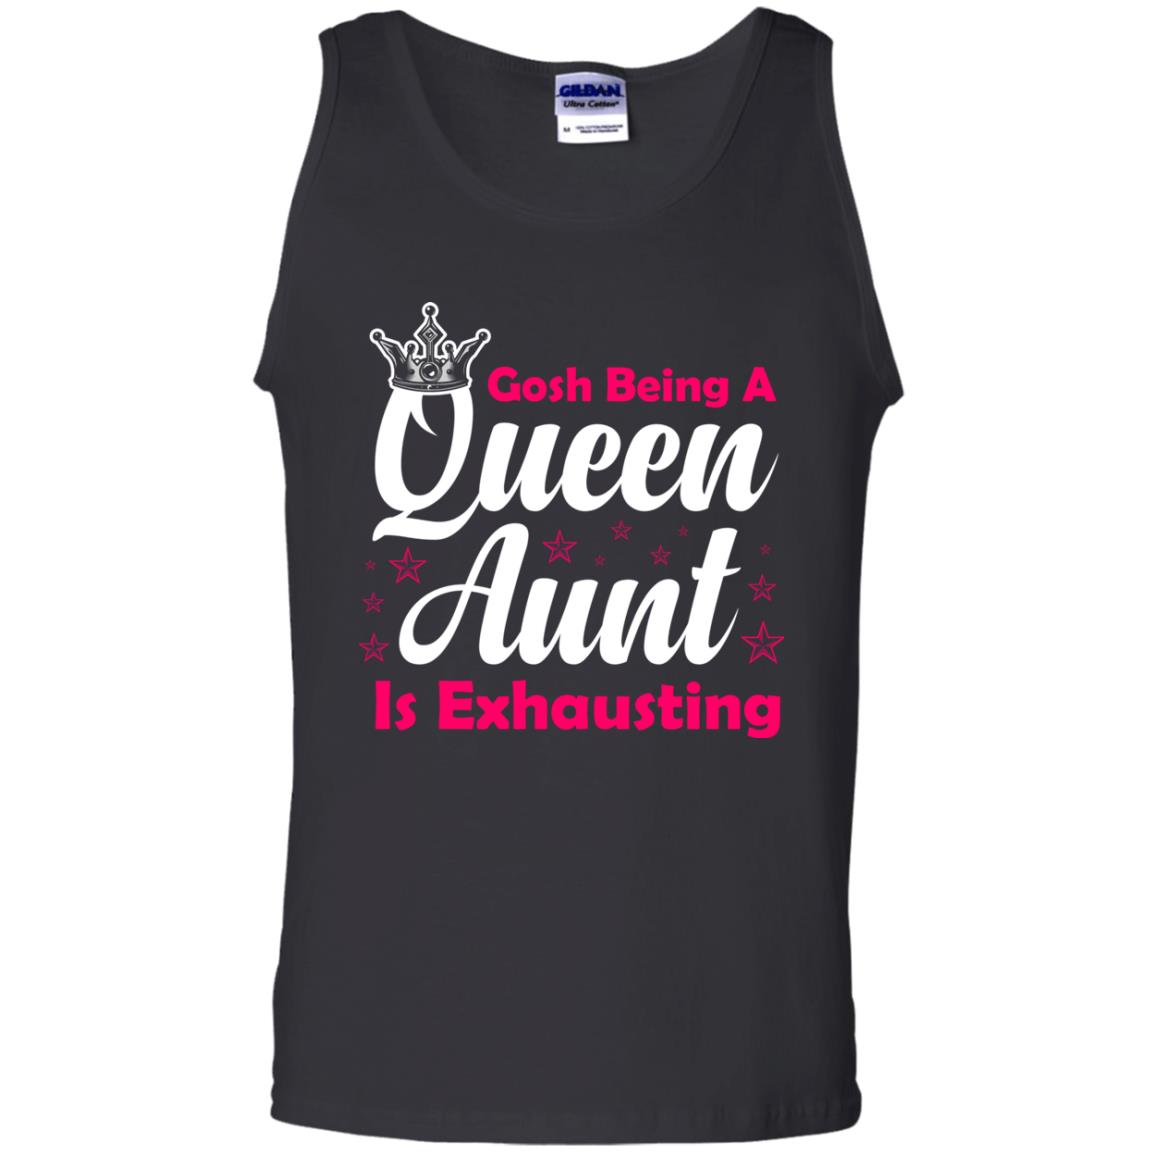 Gosh Being A Queen Aunt Is Exhausting Aunt ShirtG220 Gildan 100% Cotton Tank Top